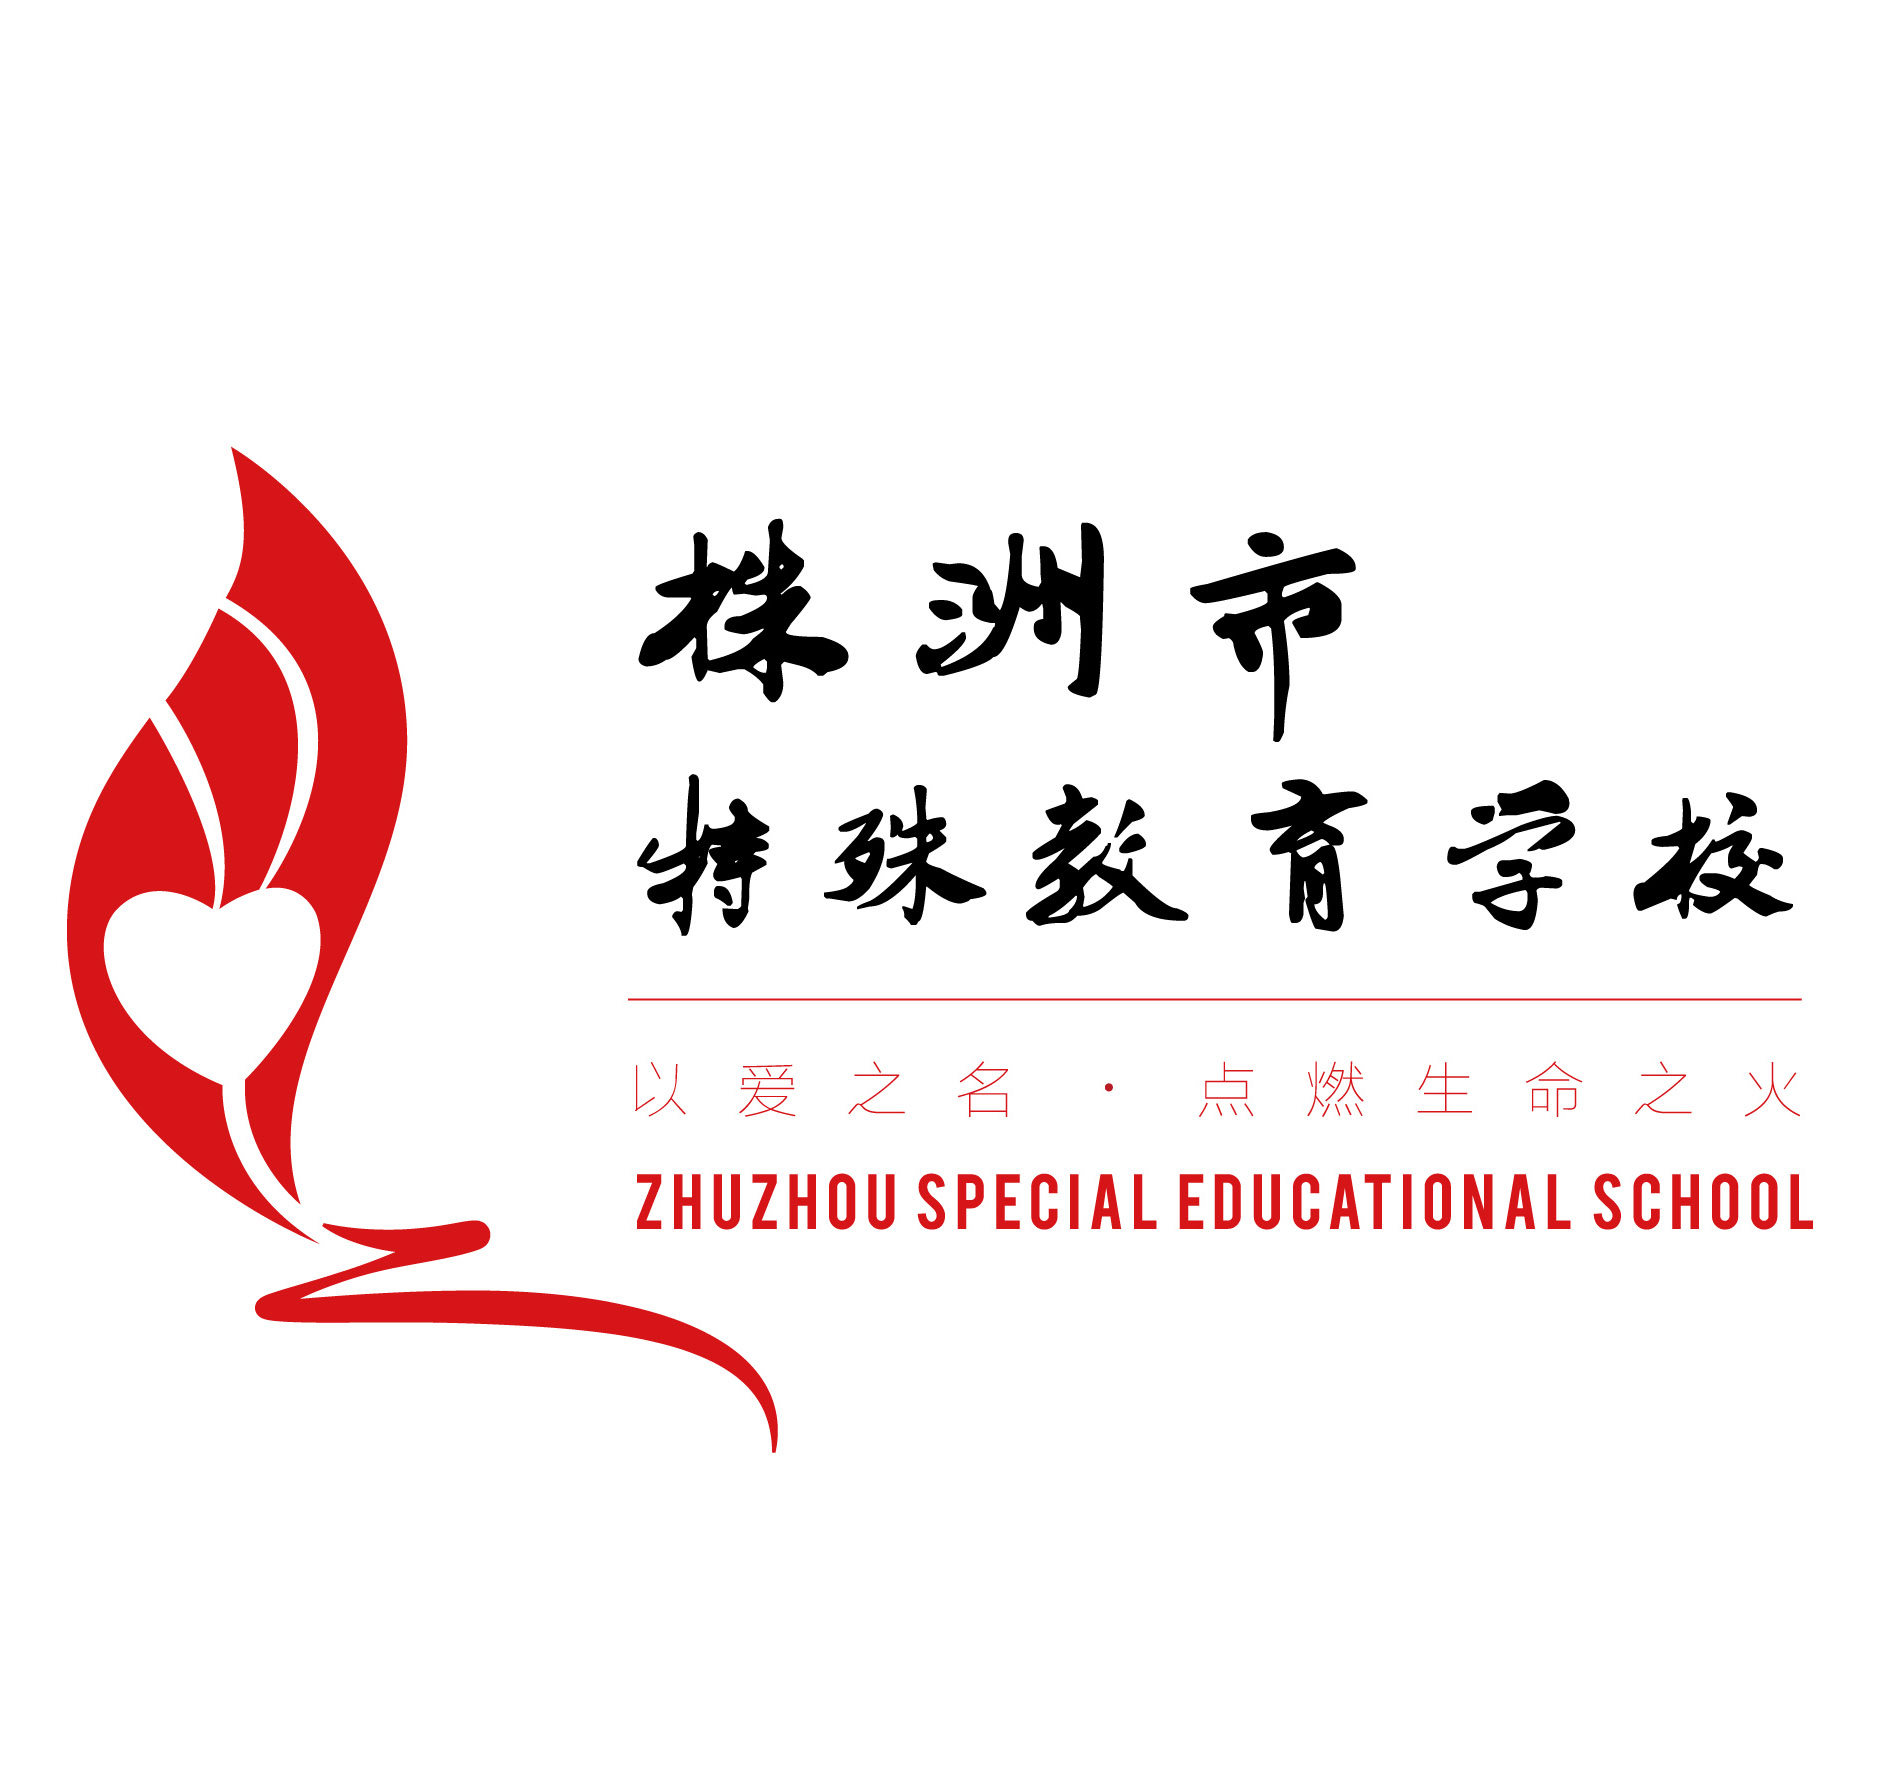 株洲市特殊教育学校logo征集大赛